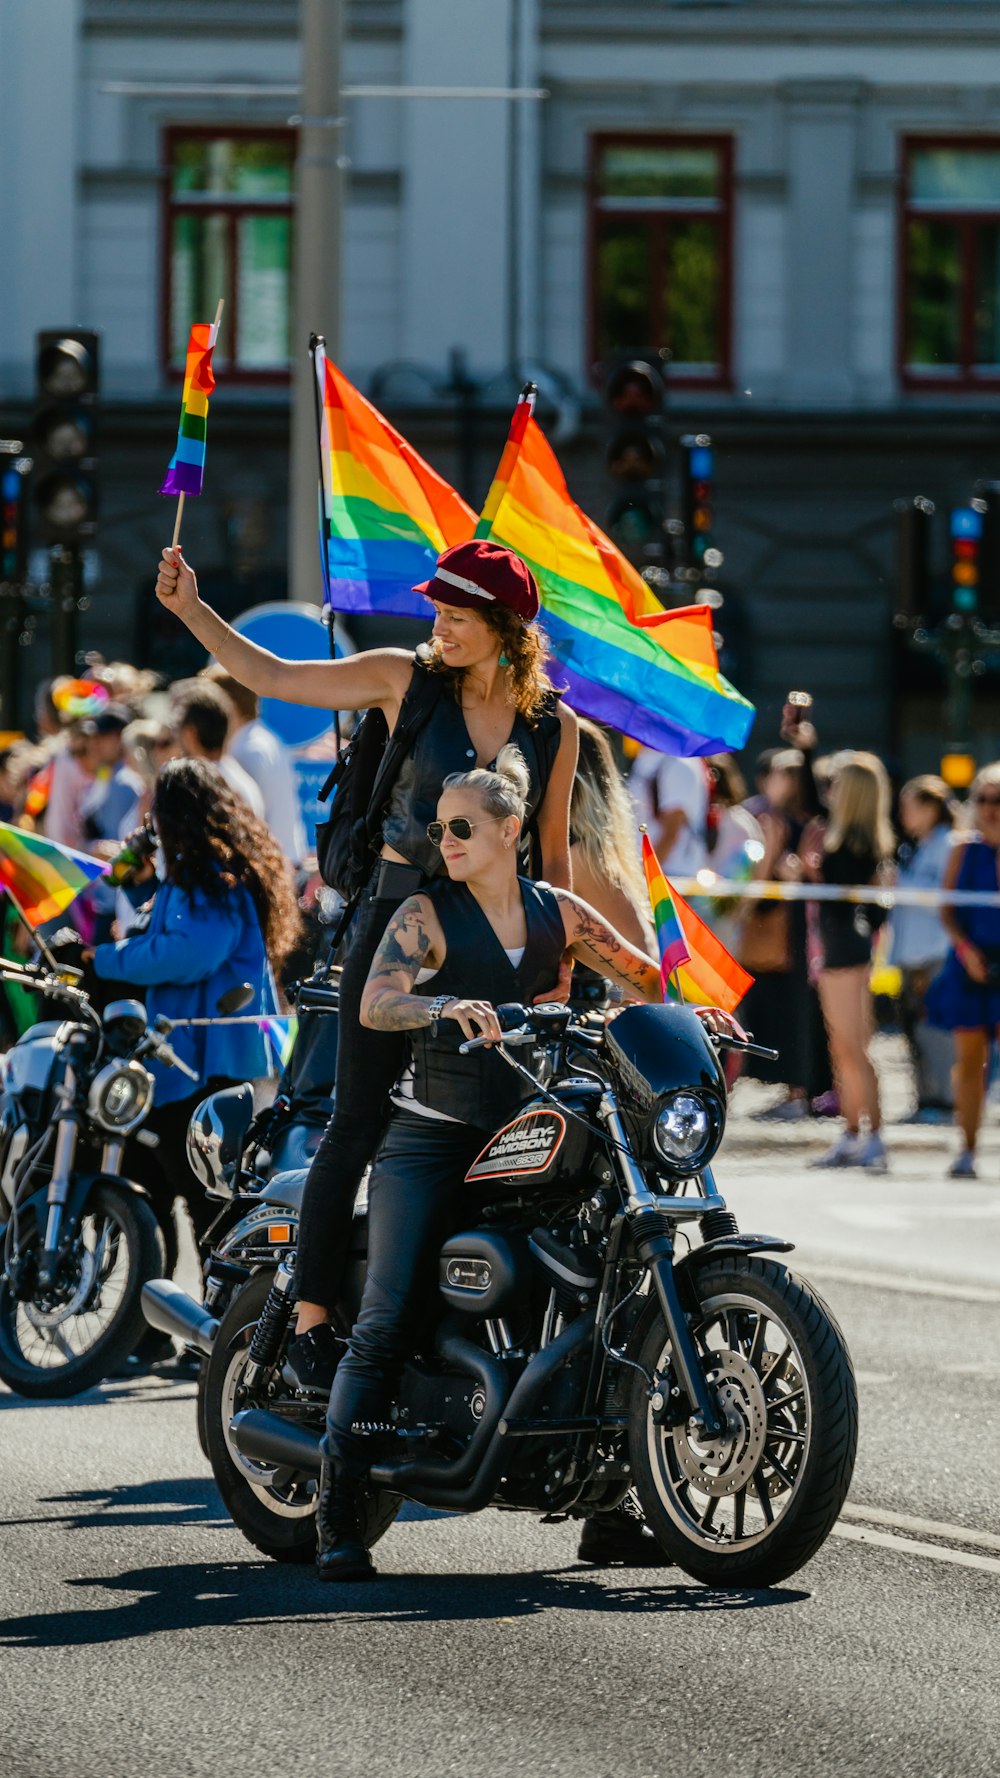 旗を持ってバイクに乗る女性のカップル